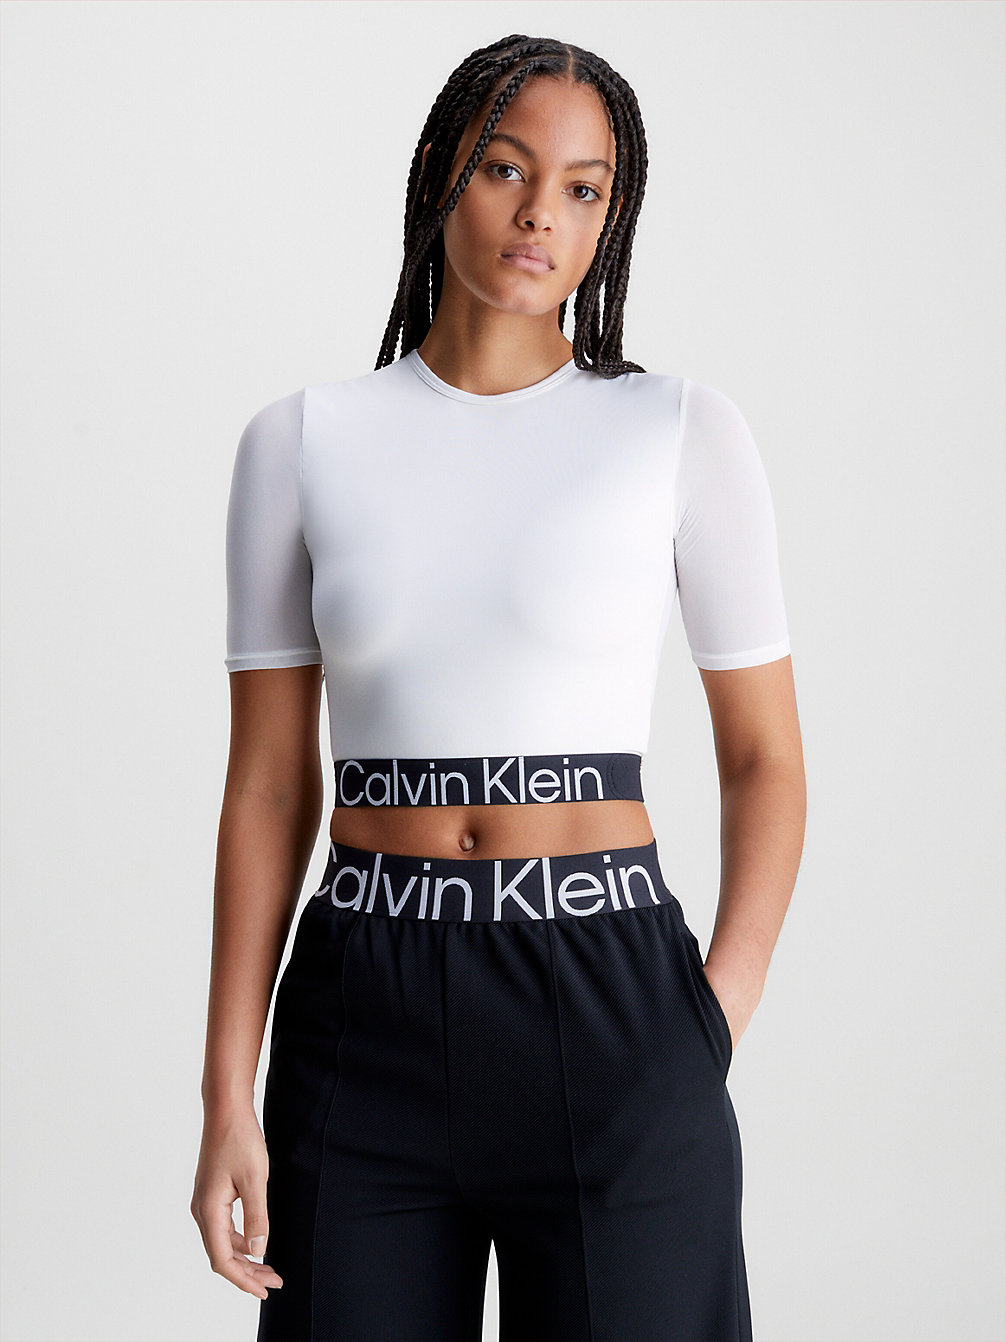 Women's Sportswear & Sport Outfits | Calvin Klein® Sport